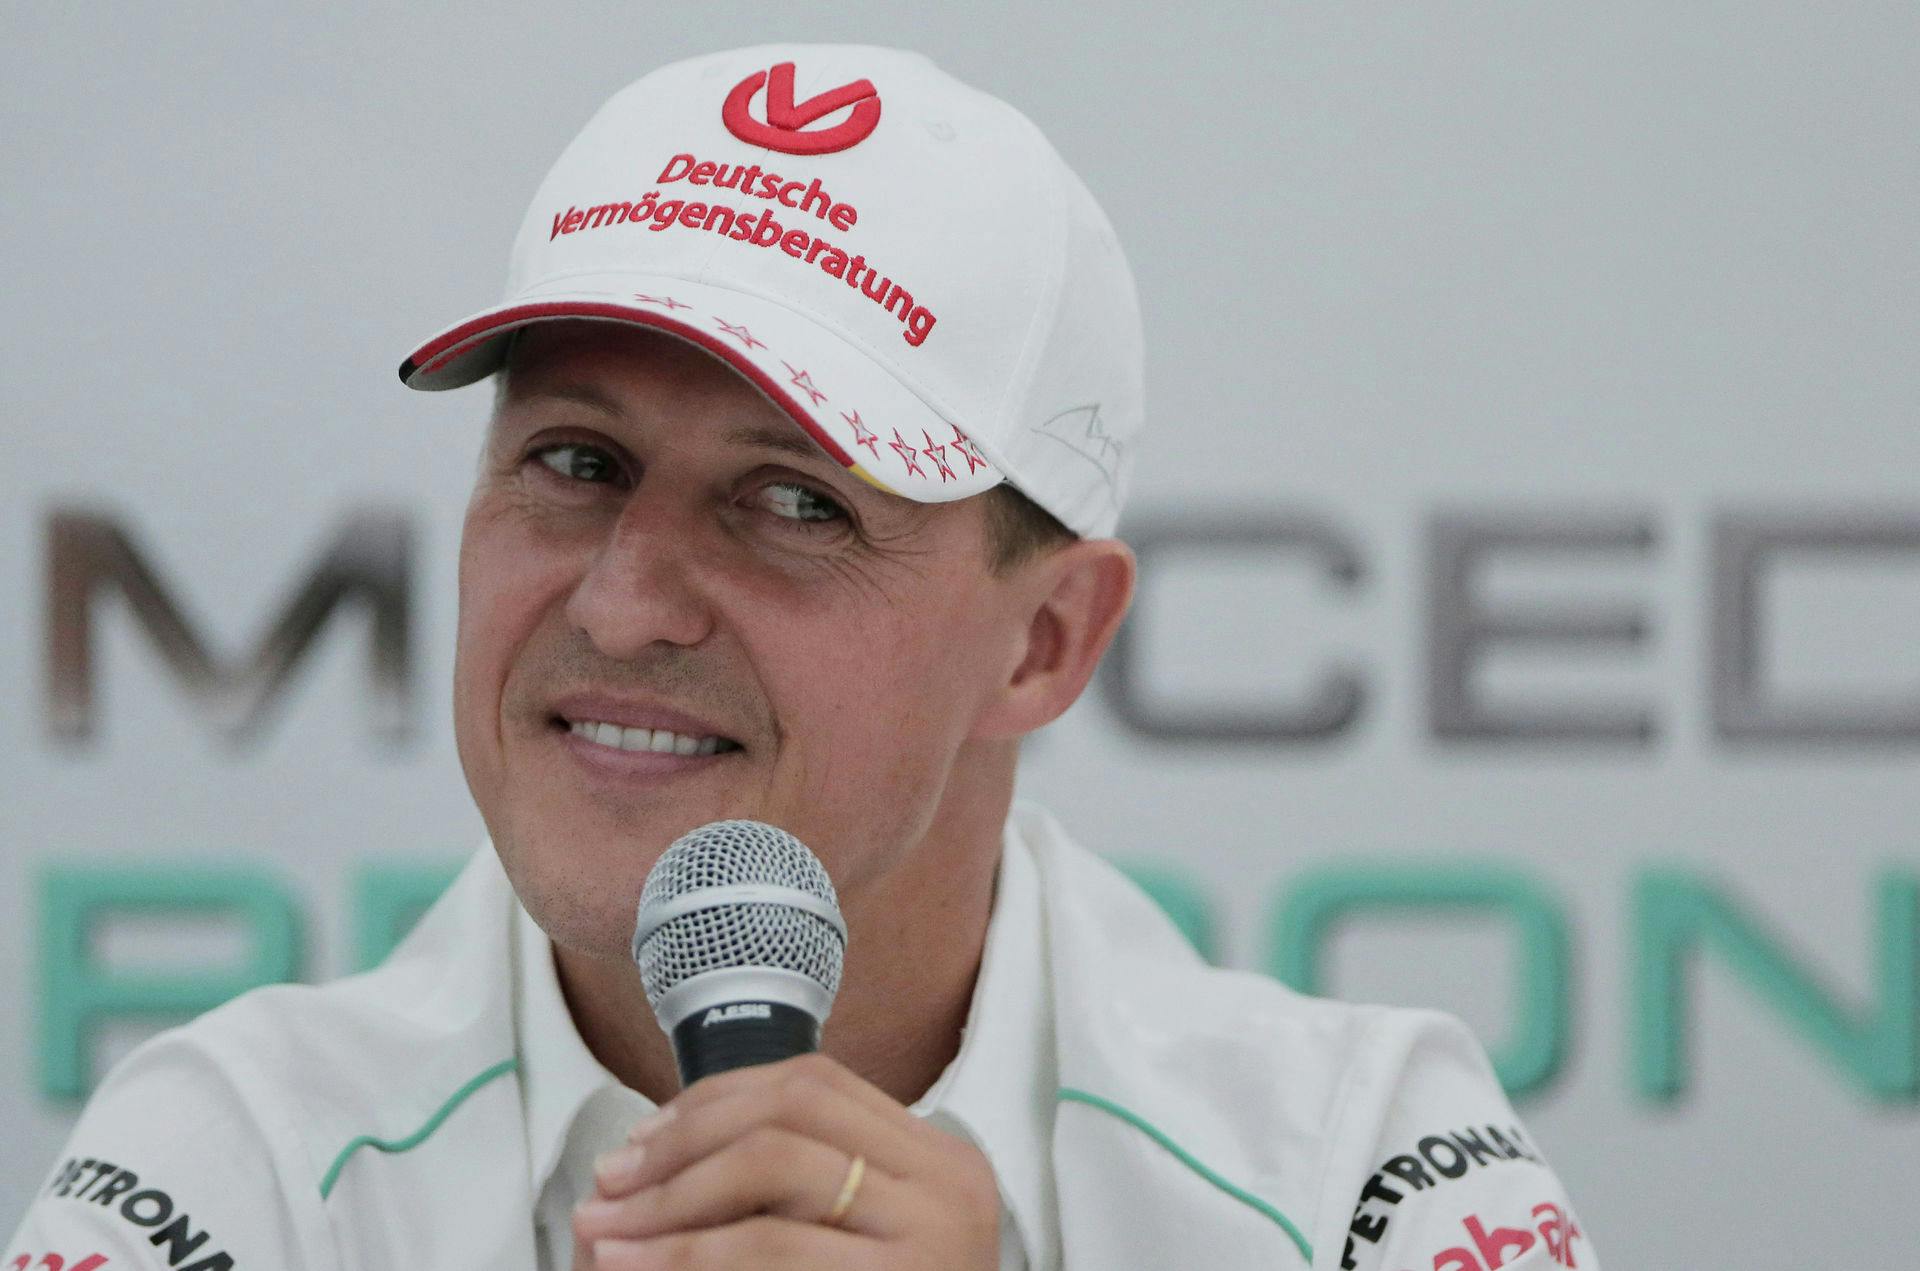 Michael Schumacher er ifølge familien ikke i nærheden af at kunne give et interview. Alligevel røg han på forsiden af et magasin, som lovede læserne "det første interview" og kaldte det en verdensnyhed.